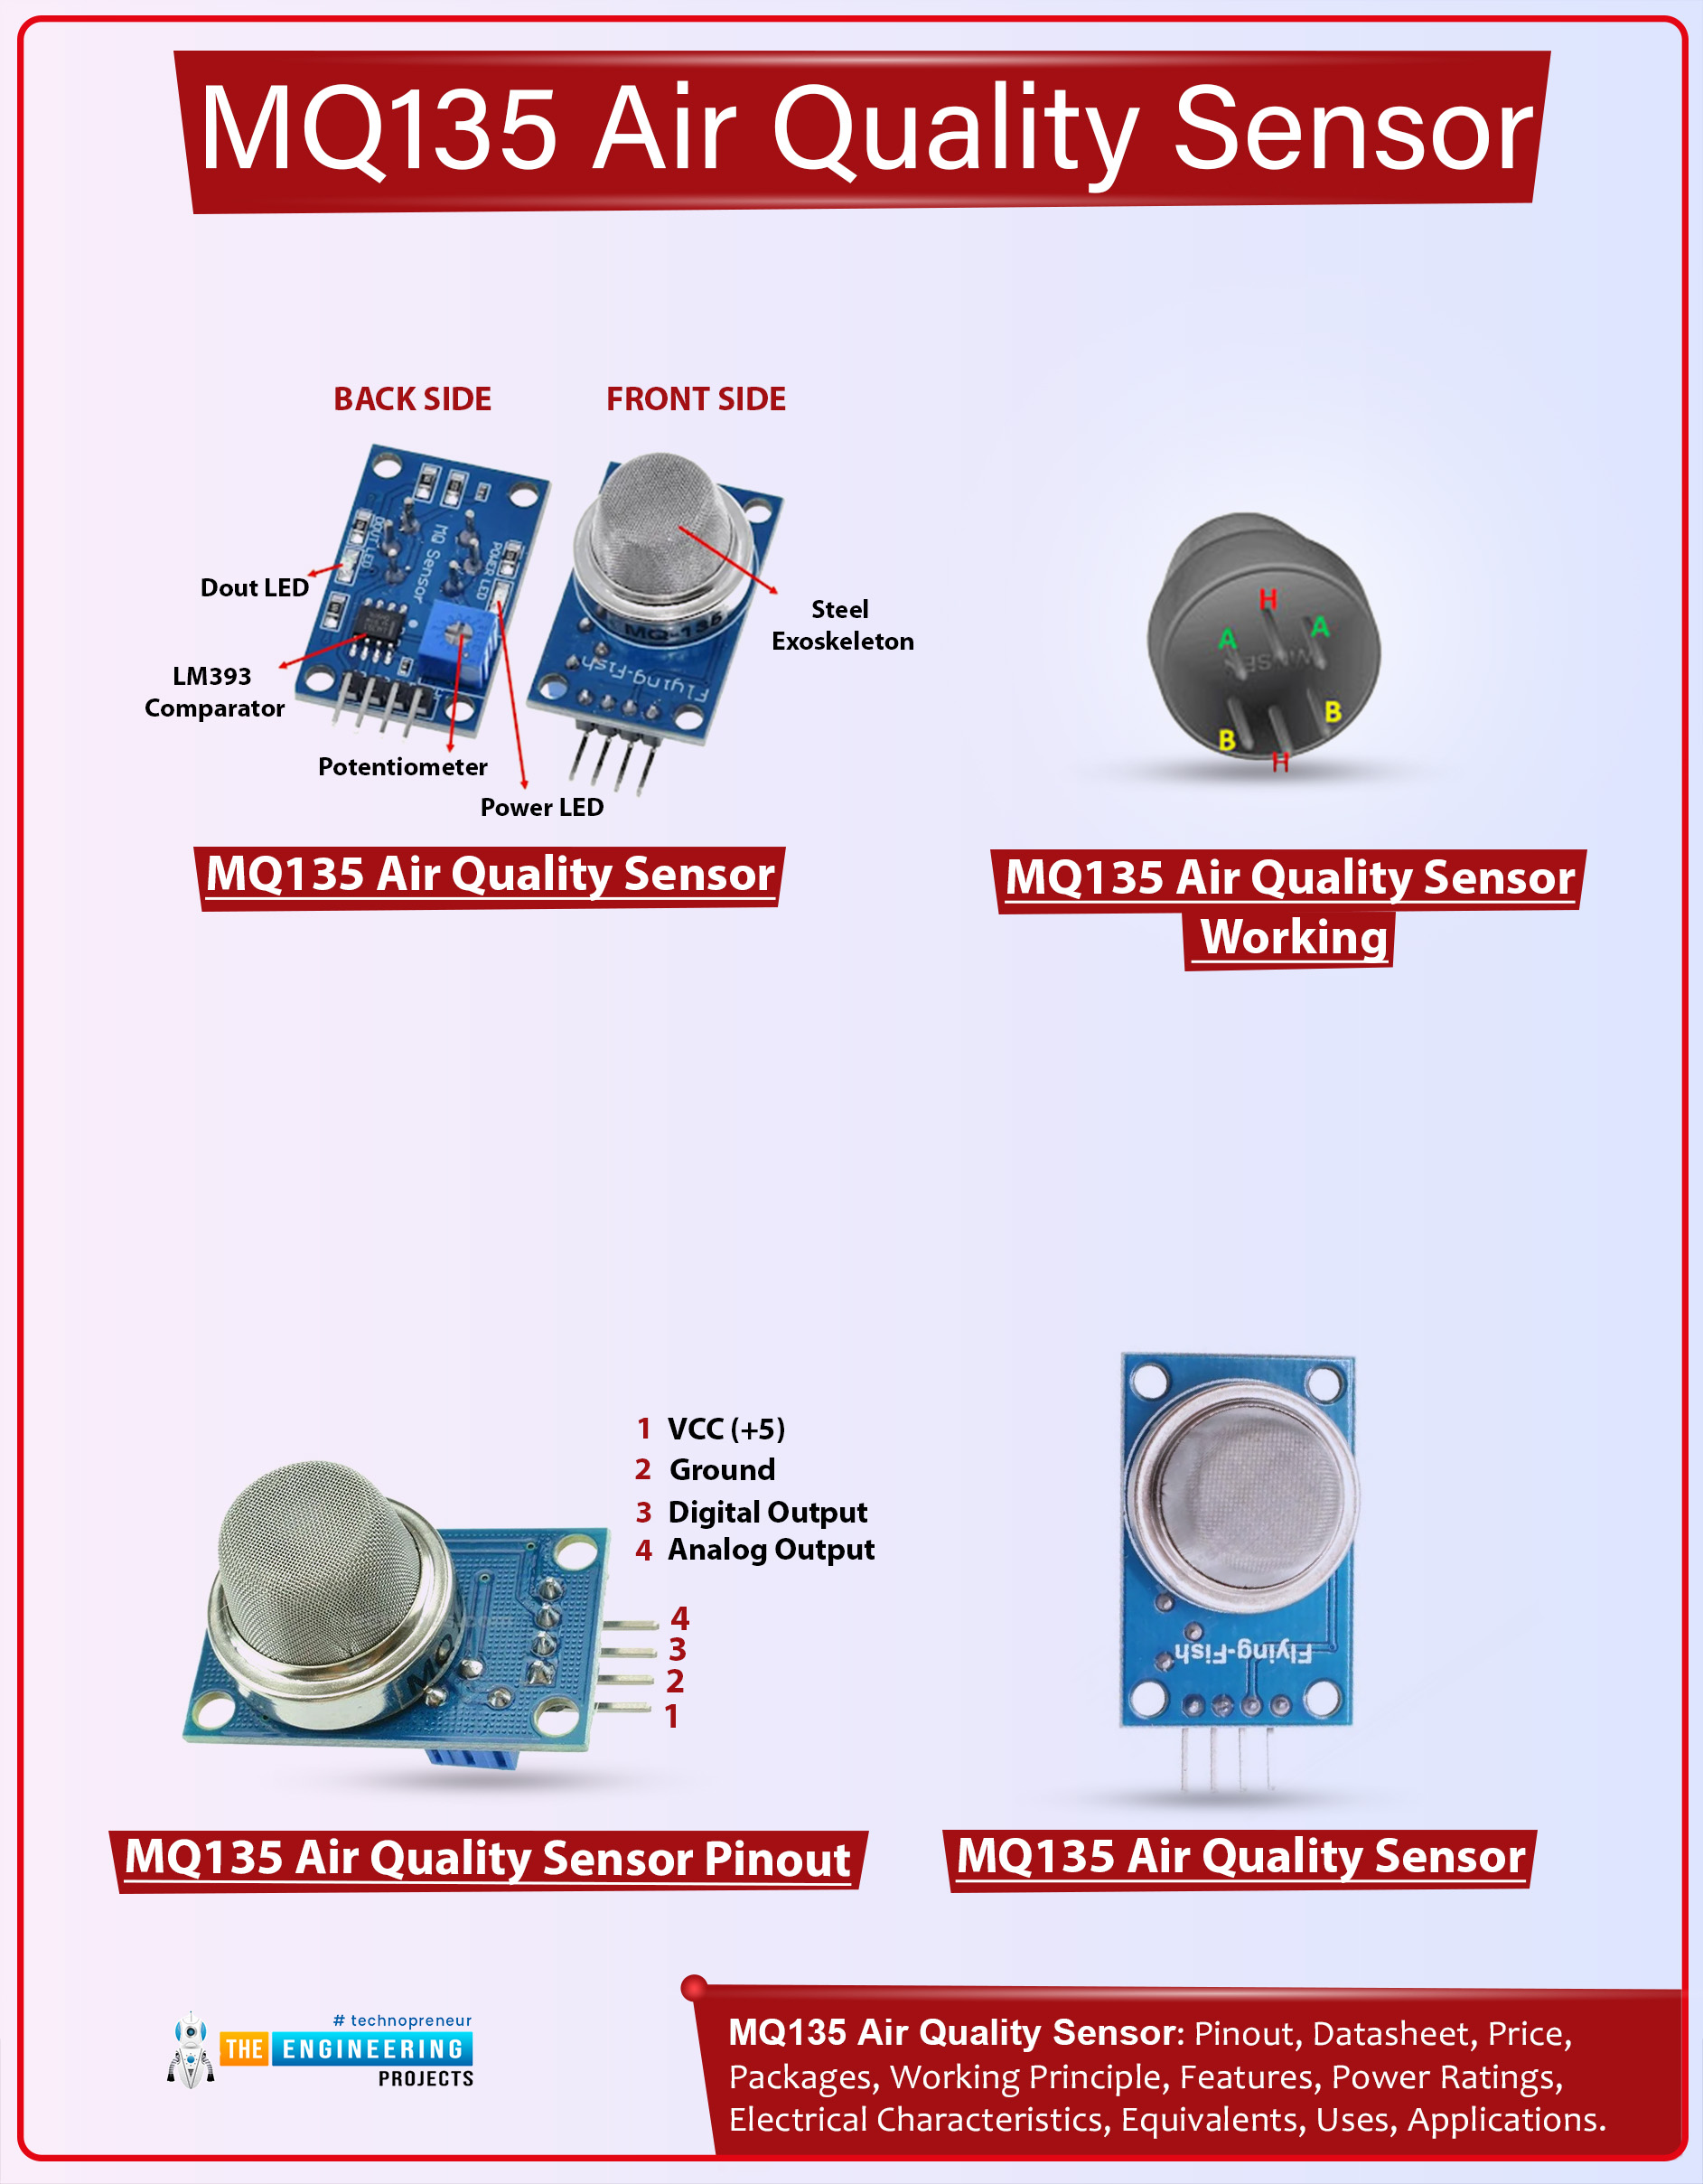 MQ135, MQ135 Air Quality Sensor, MQ135 Pinout, MQ135 Datasheet, MQ135 Working, MQ135 Features, MQ135 Specifications, MQ135 Applications